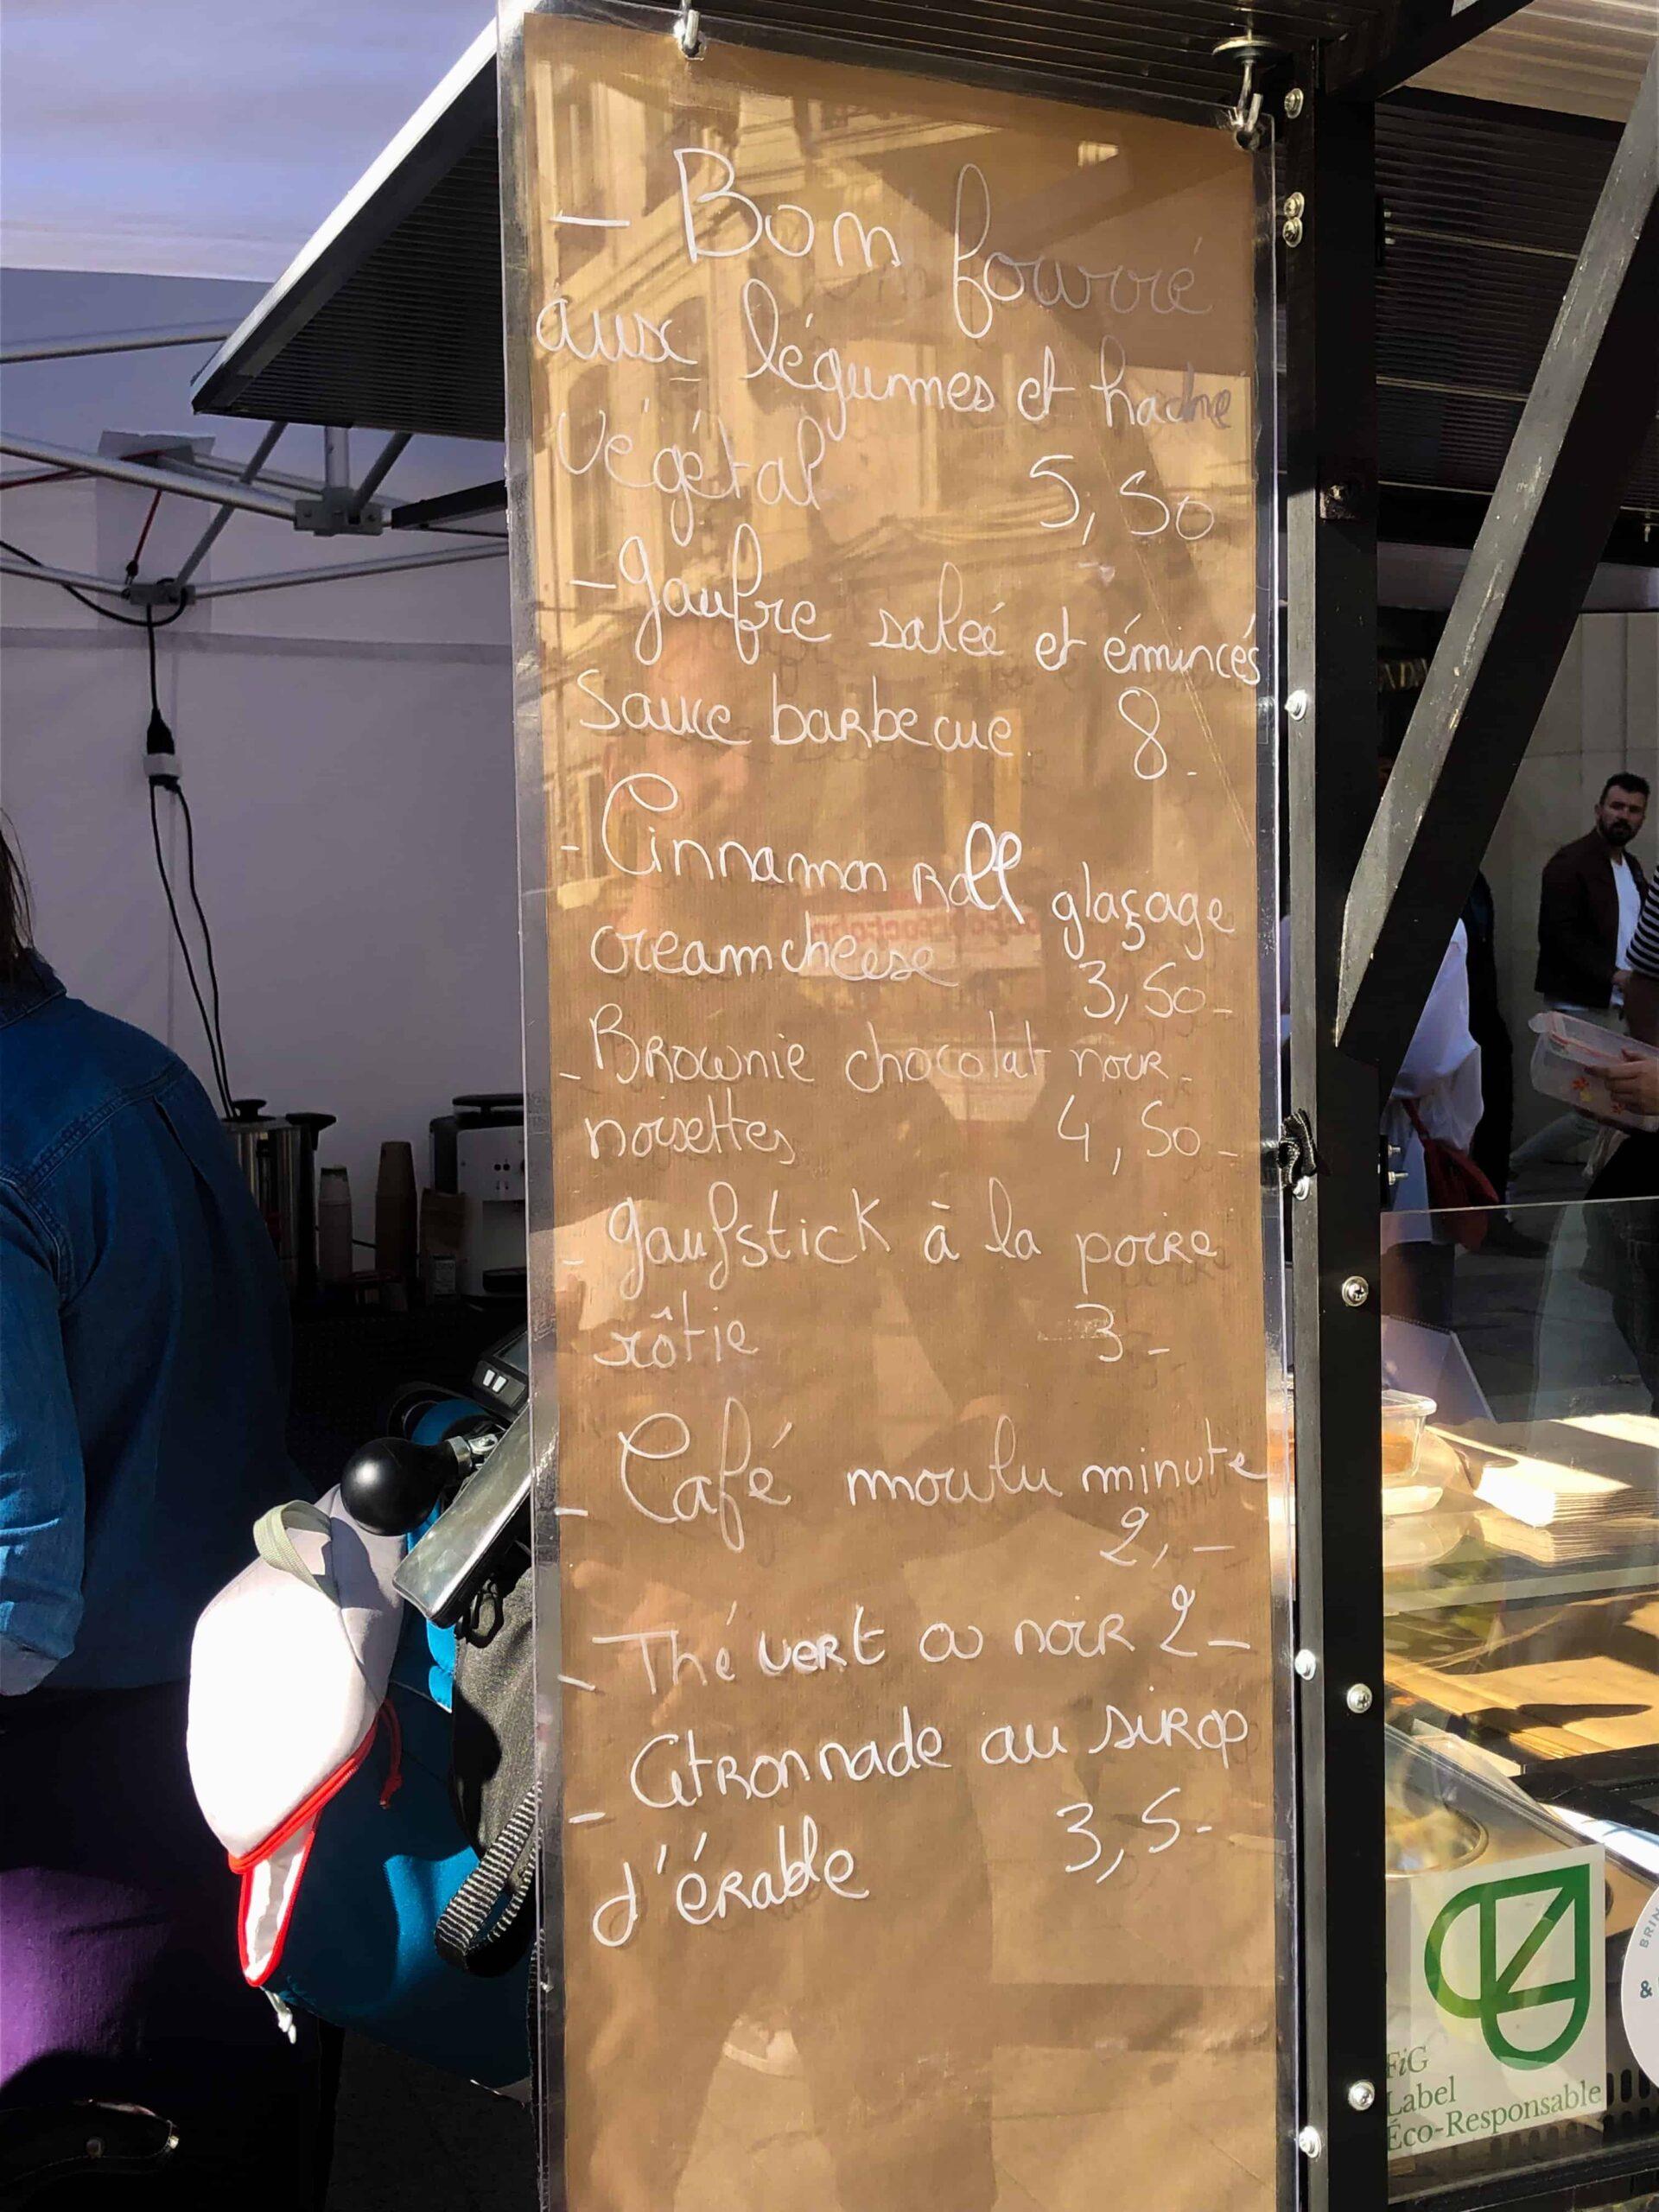 Market menu of Oupsi at vegan place lyon france on place de la republique in 2022